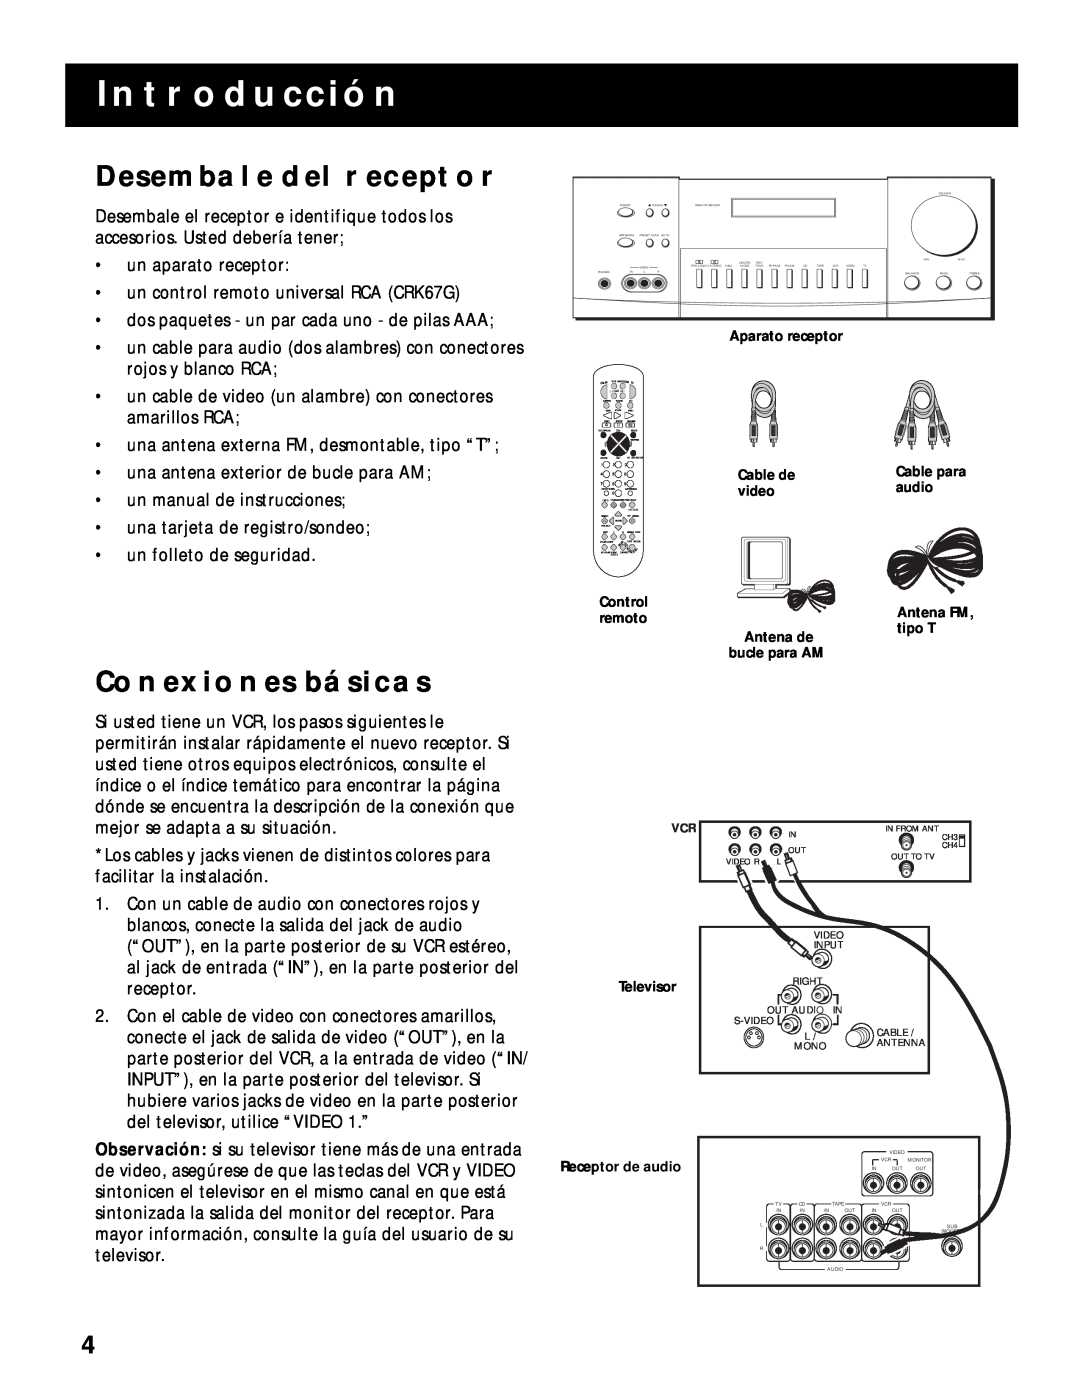 RCA RV-9968, RV-9978 manual Introducción, Desembale Del Receptor, Conexiones Básicas 